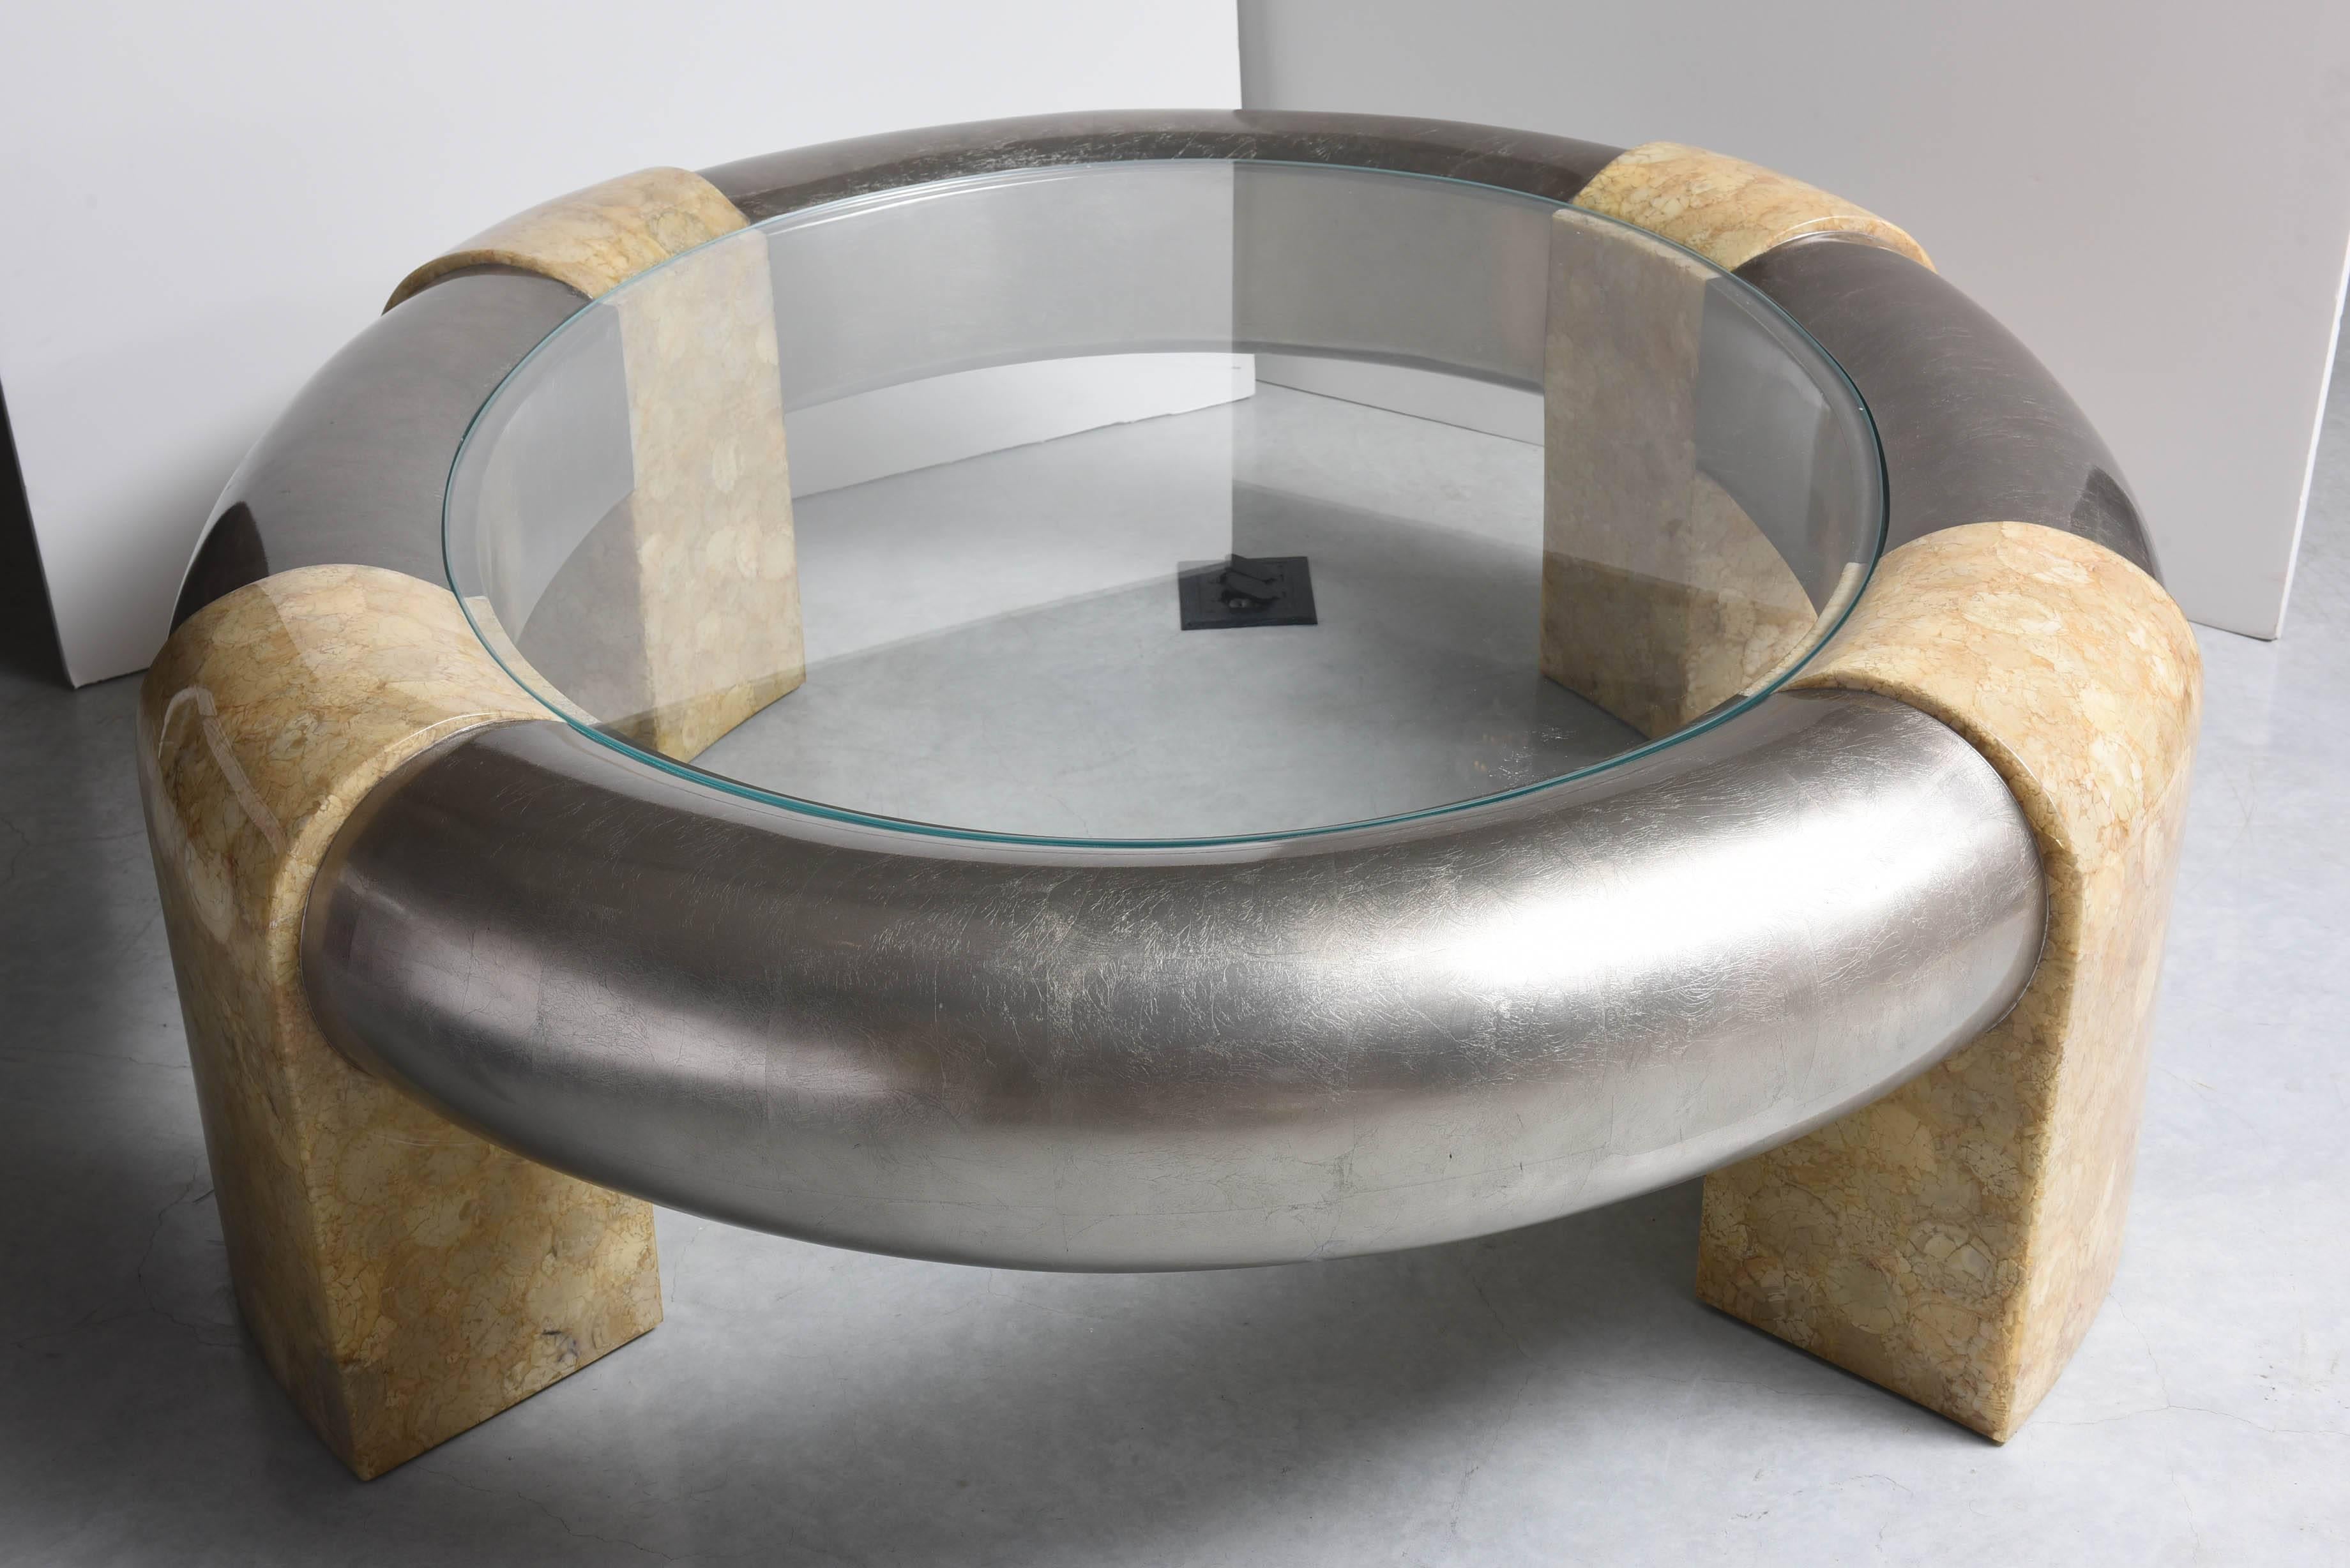 Giltwood Huge Oval Coffee Table SilverGilt Woodframe Tessellated Stone Legs Suberb 